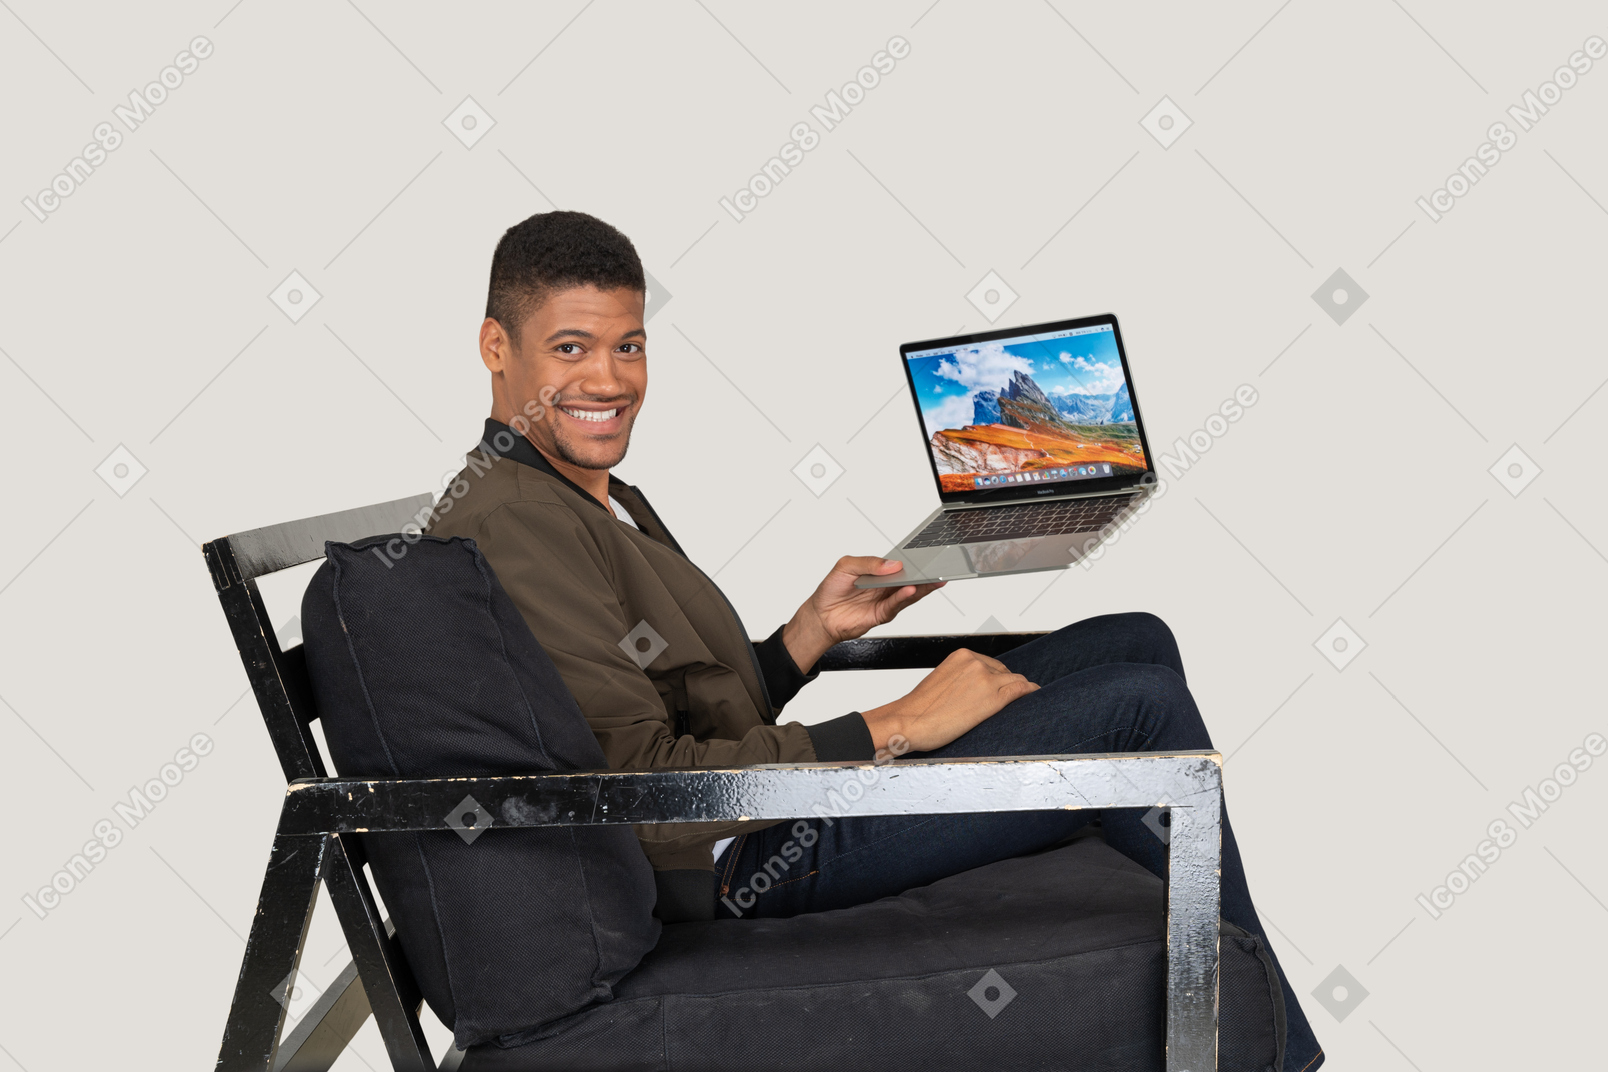 Vista lateral del joven sentado en un sofá y sosteniendo una computadora portátil